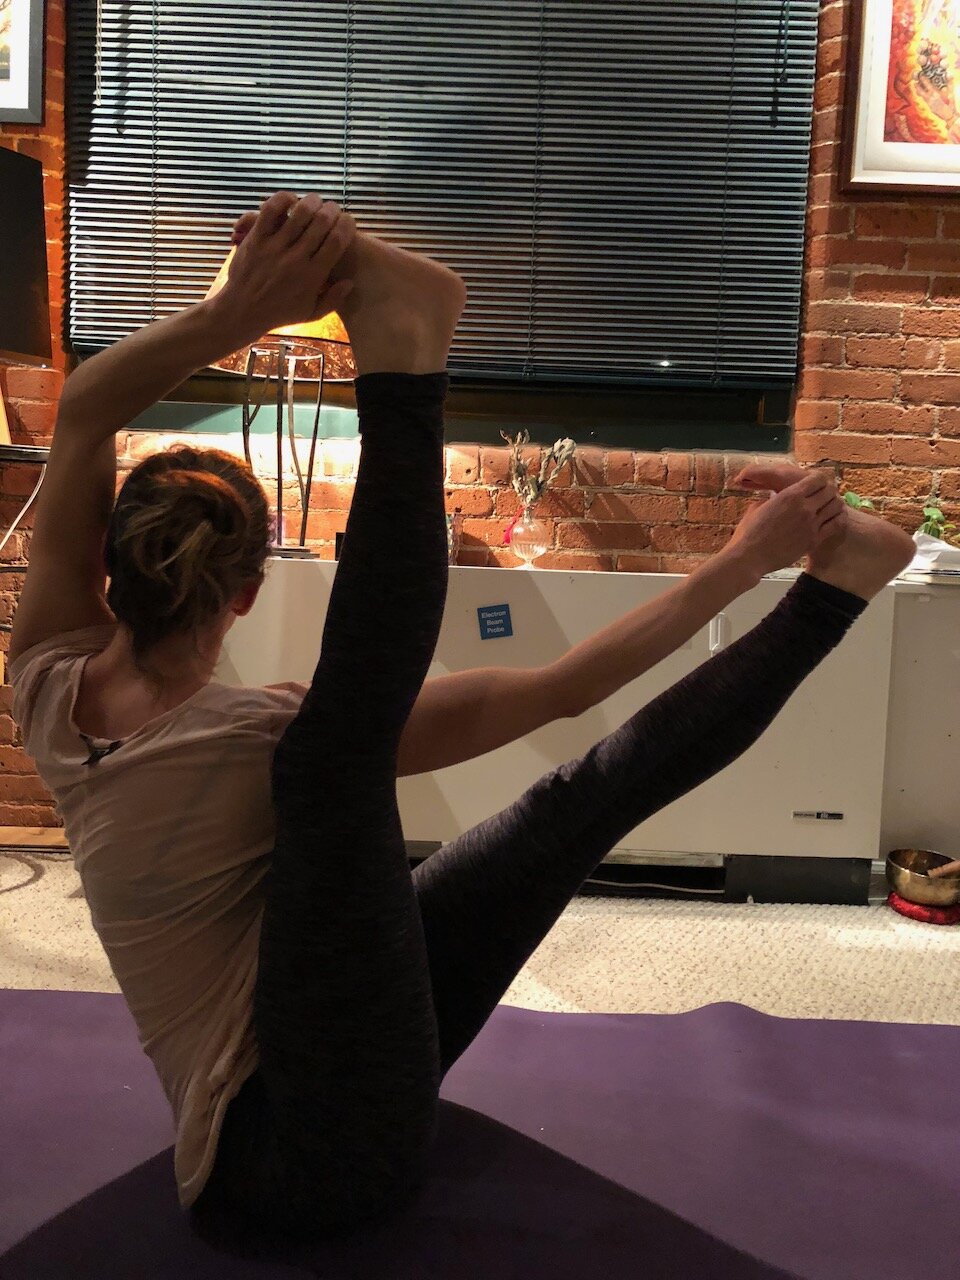    Yoga at home, Norwalk, CT 1/14/18   